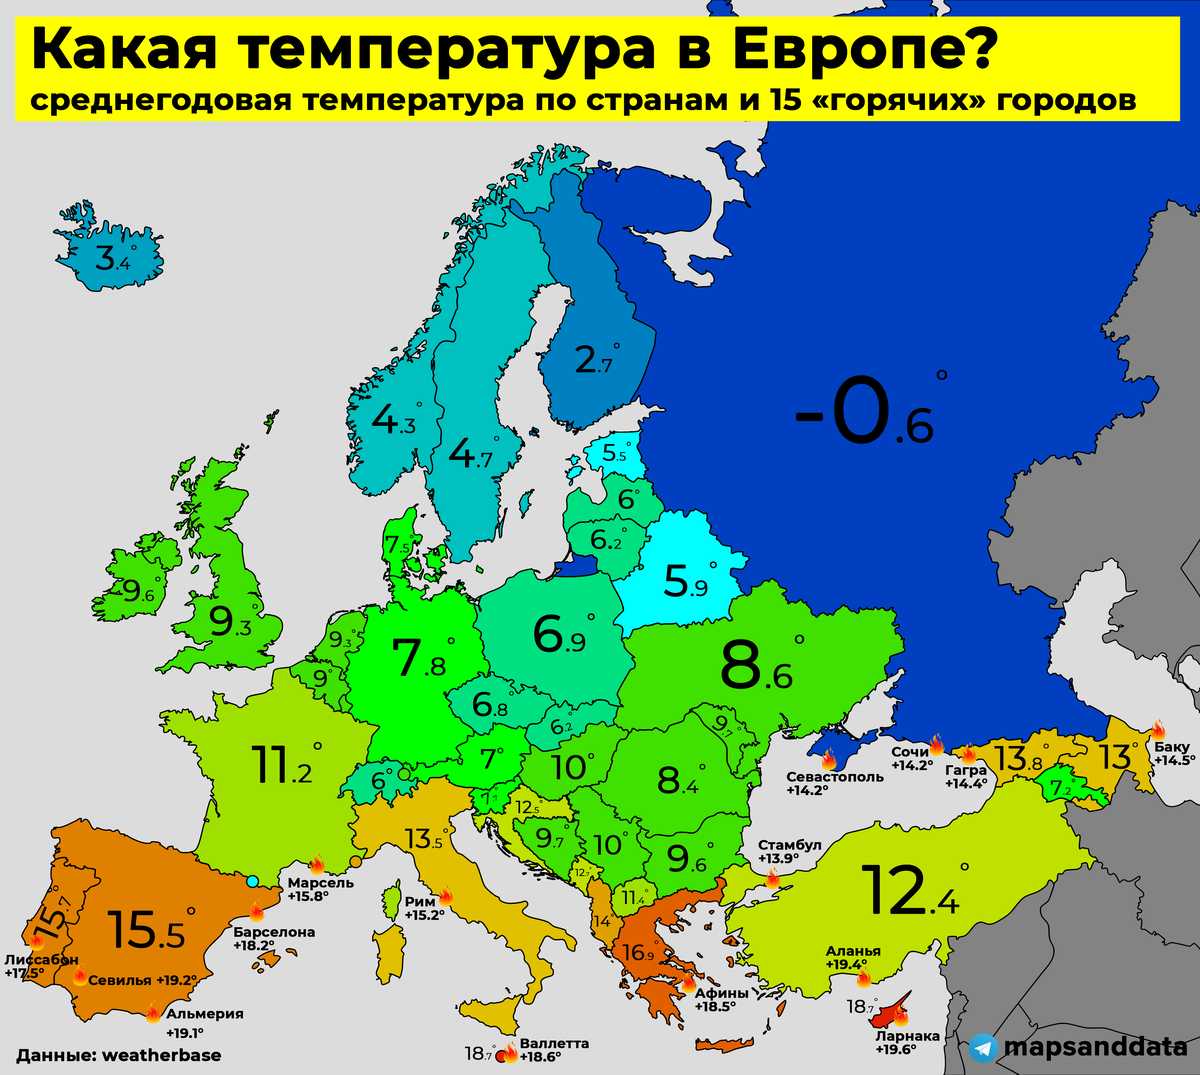 Теплая европа. Температурная карта Европы. Карта температур Европы. Средняя температура в Европе. Температурная карта Европы зимой.